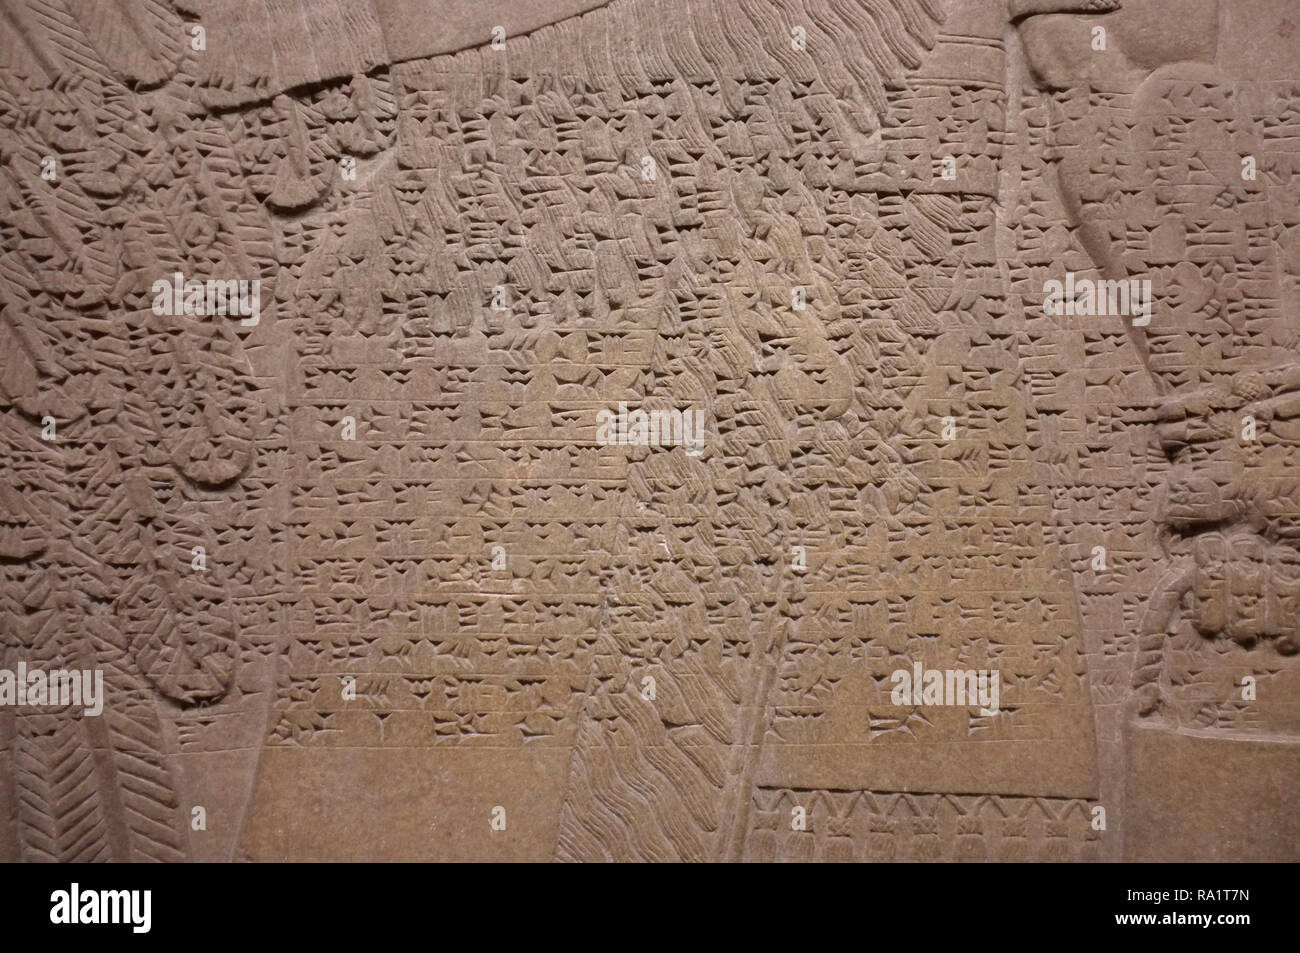 Alten sumerischen Artefakten des British Museum, London, mit Keilschrift Text und Schrift aus der alten assyrischen Region jetzt den Irak. Stockfoto